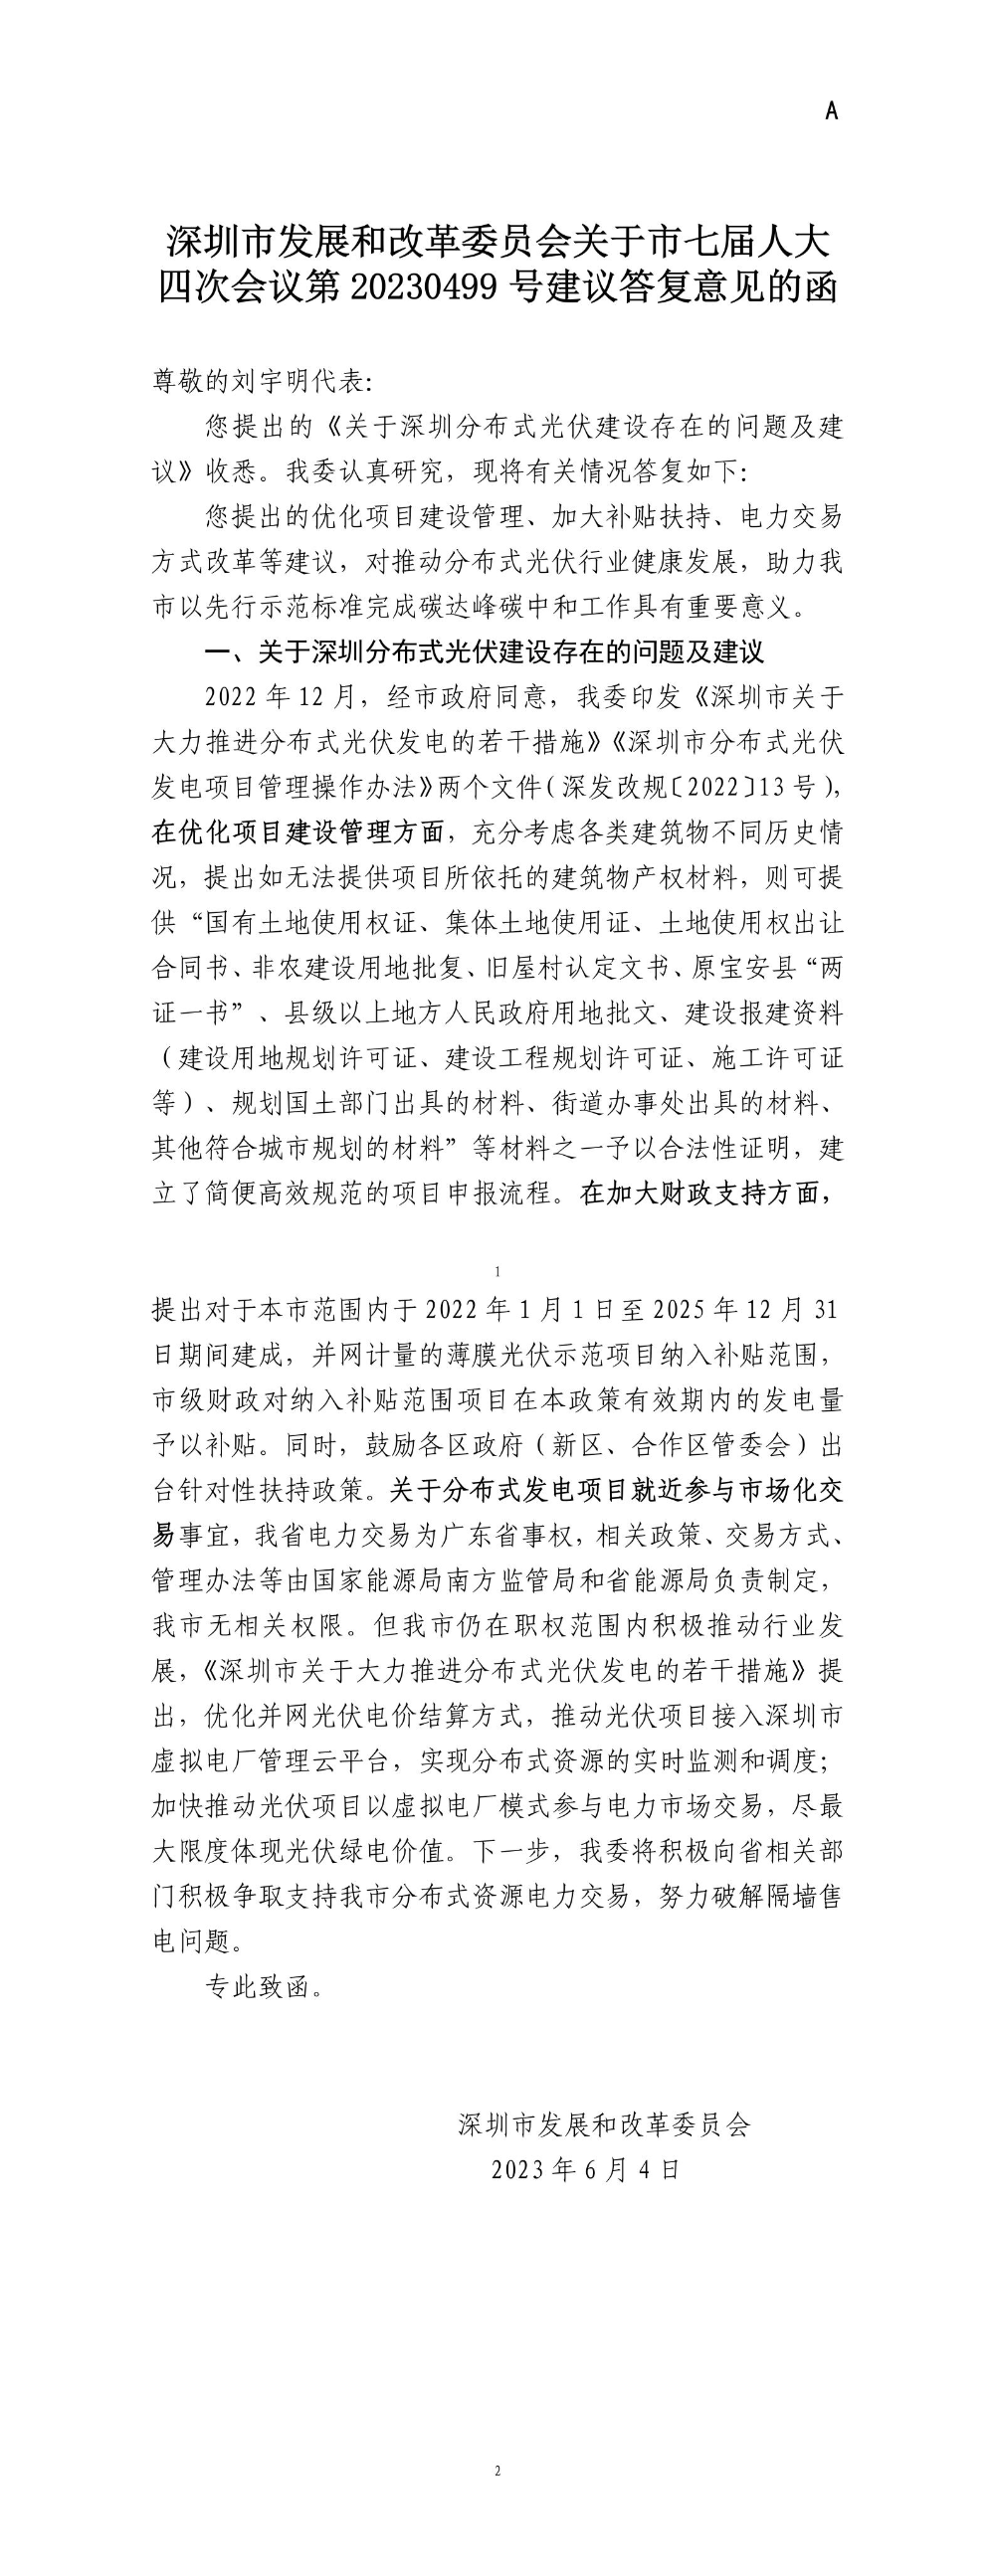 深圳市发展和改革委员会关于市七届人大四次会议第20230499号建议答复意见的函.jpg